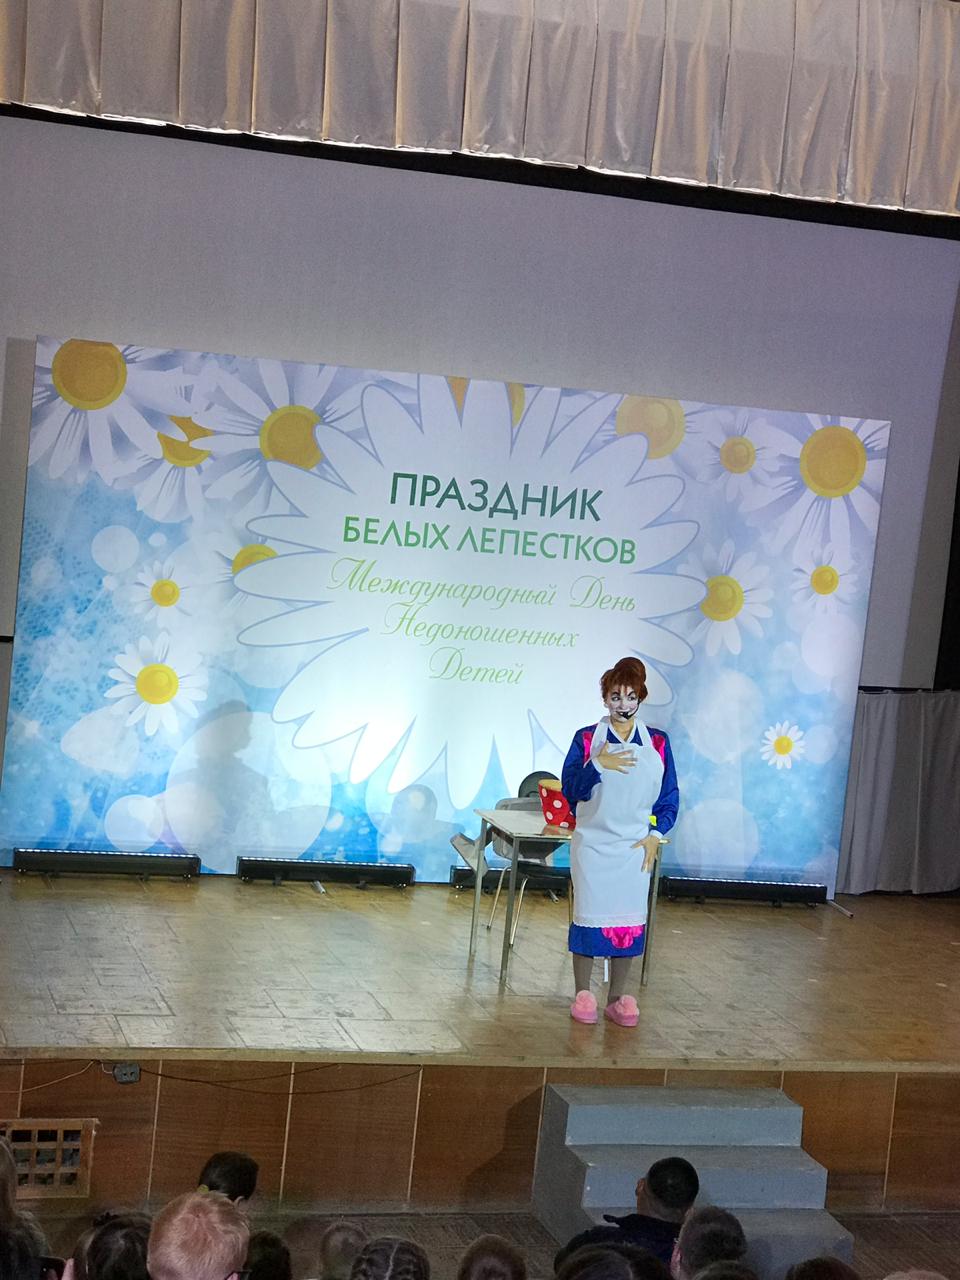 Праздник «Белых лепестков» в Нижегородской областной деткой клинической больнице